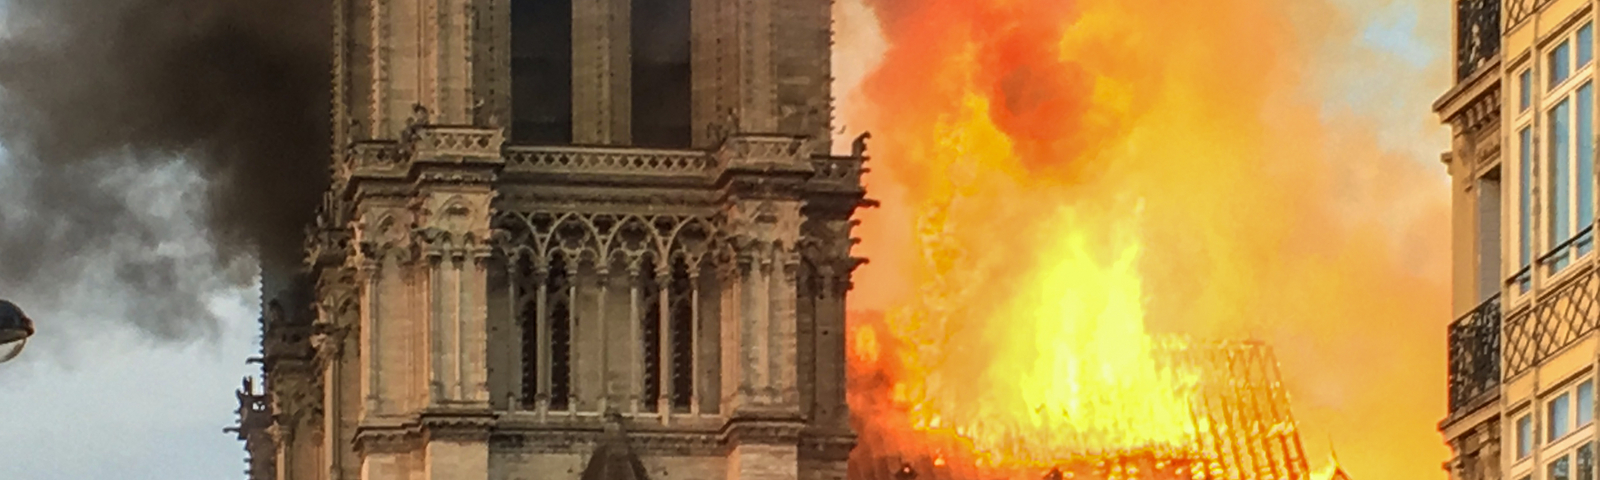 Baulicher Brandschutz in Kirchen